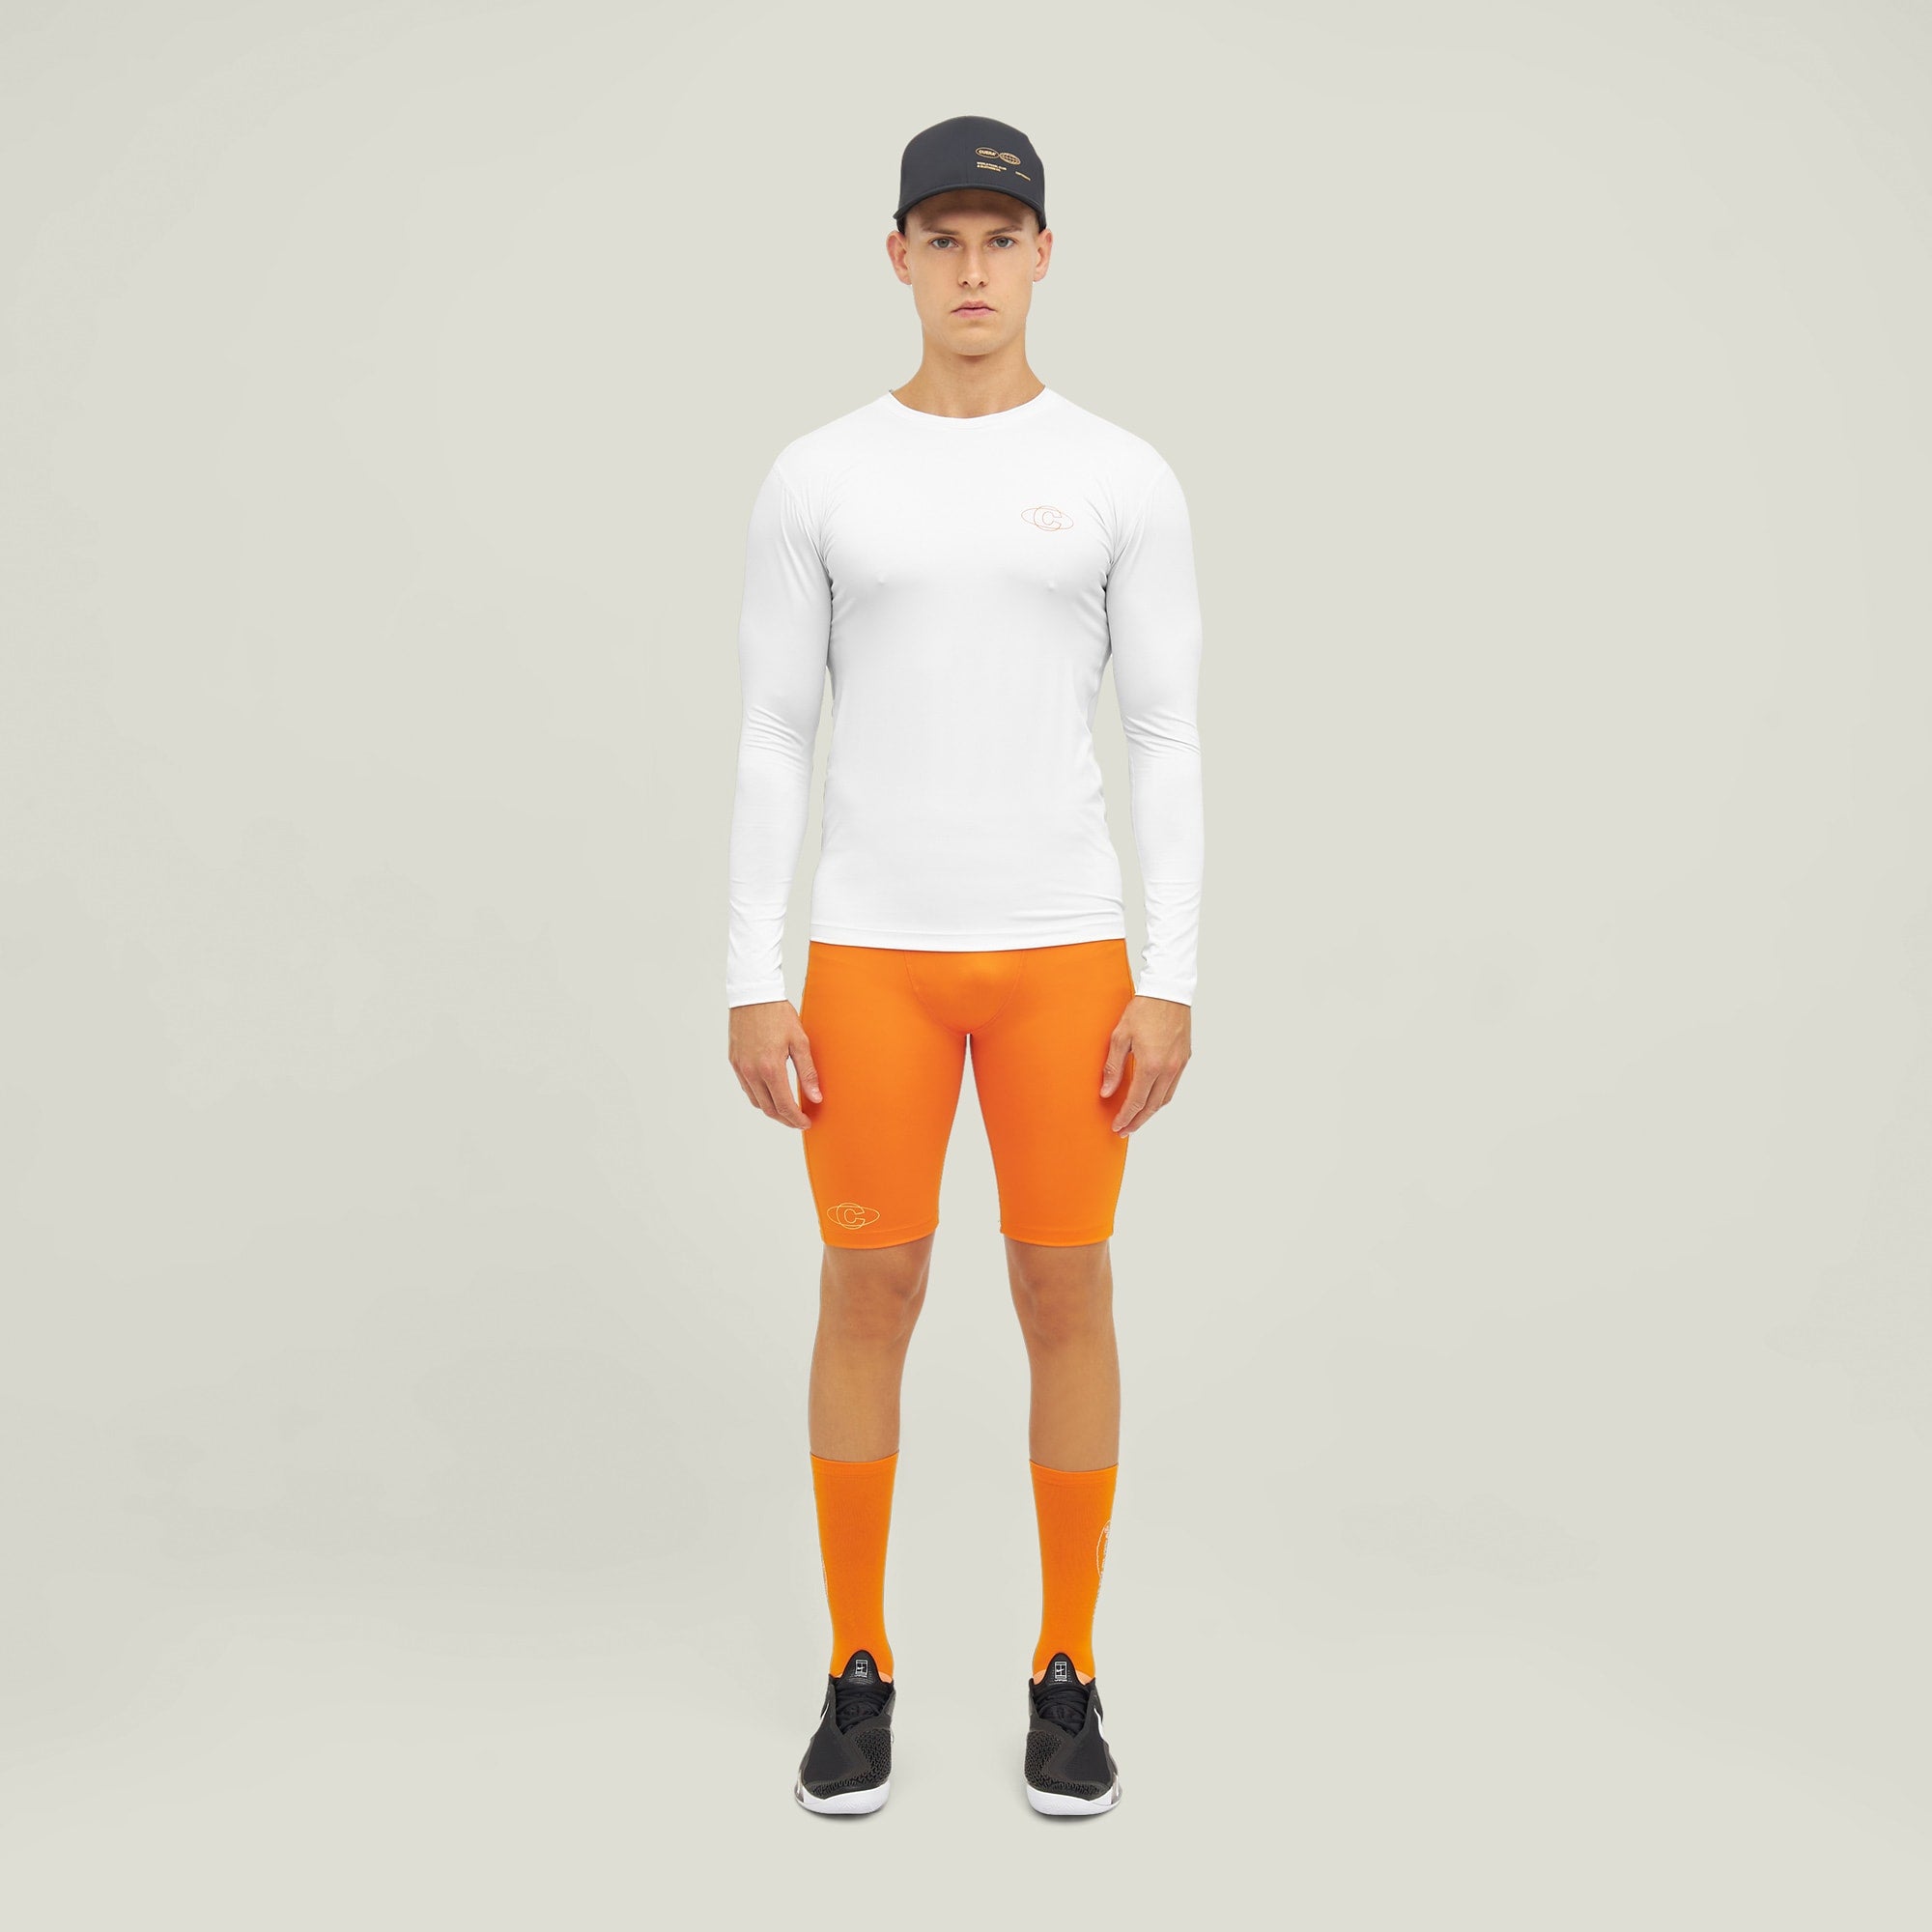 Oncourt Layer Tights - Orange